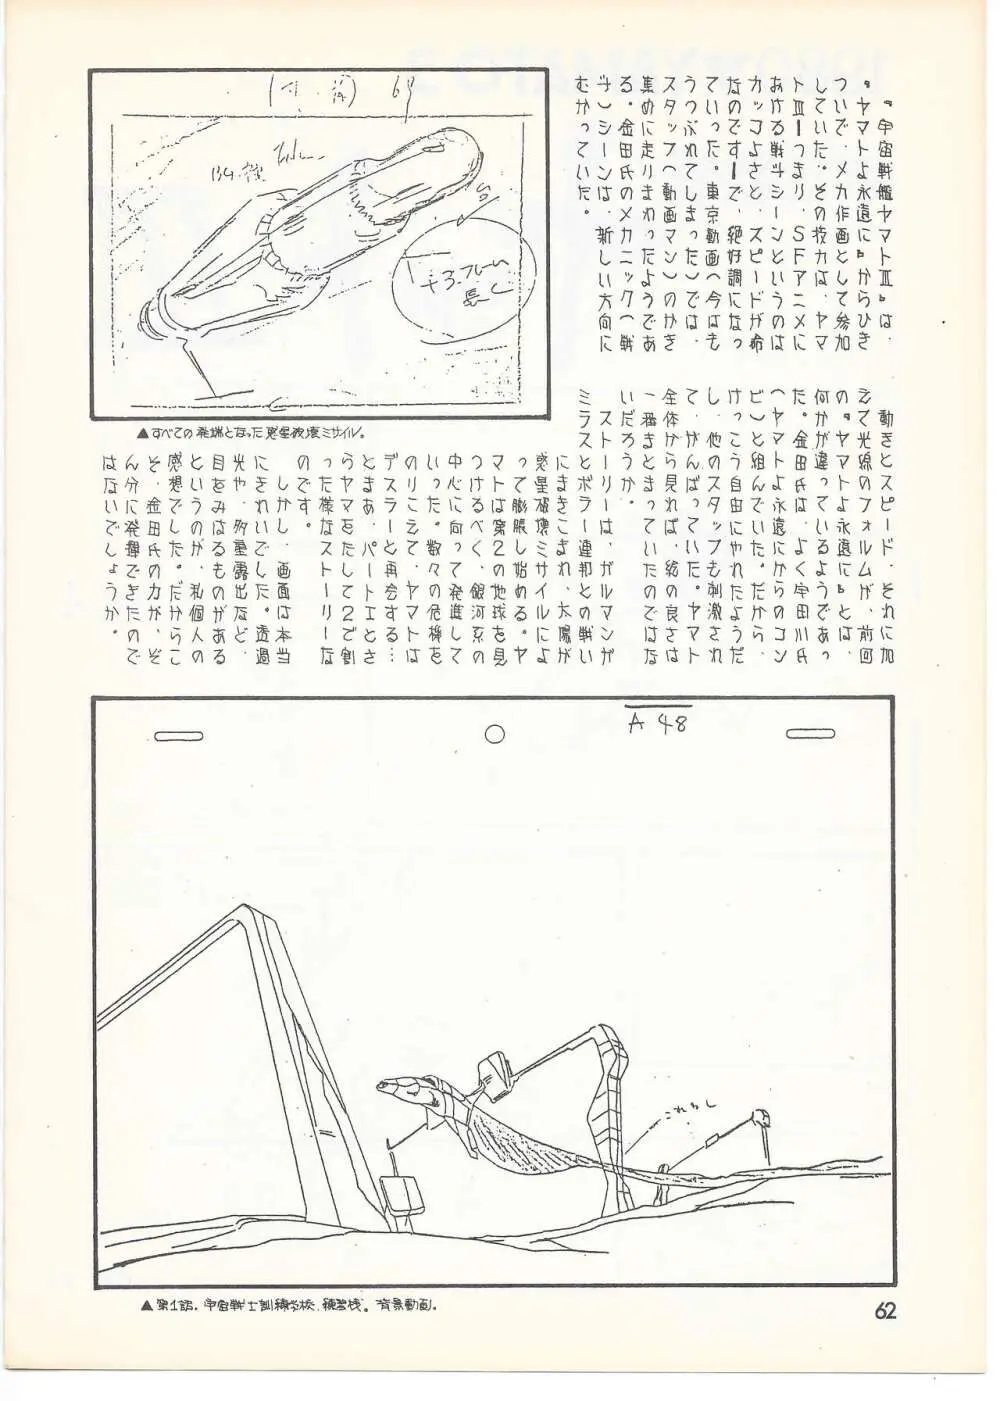 THE ANIMATOR 1 金田伊功特集号 59ページ